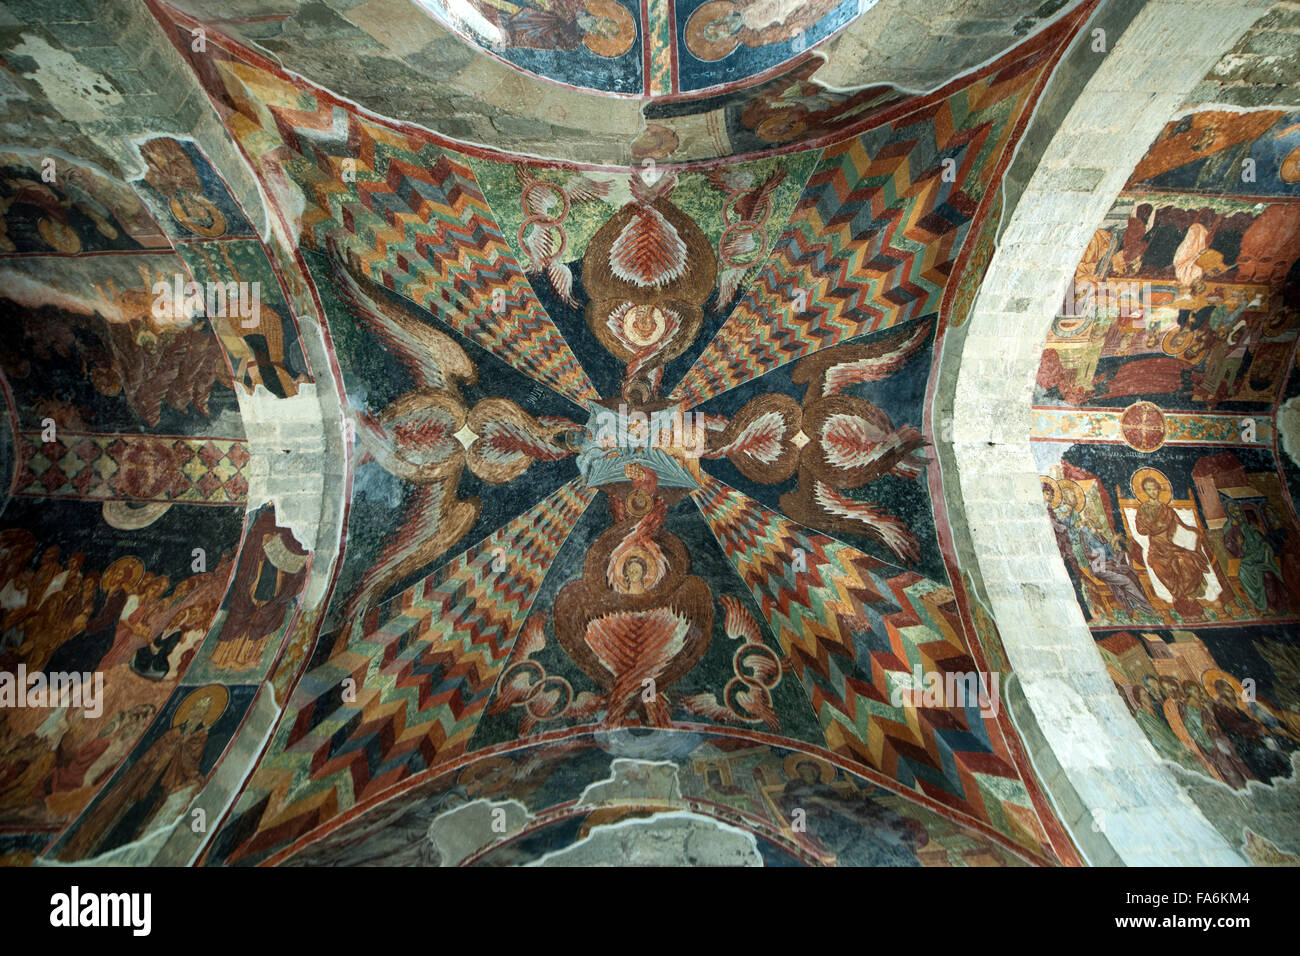 Türkei, östliche Schwarzmeeküste, Trabzon, Hagia Sophia Museum, Narthex. Fresken im Zentrum des Kreuzgratgewölbes. Hand Gottes u Stock Photo